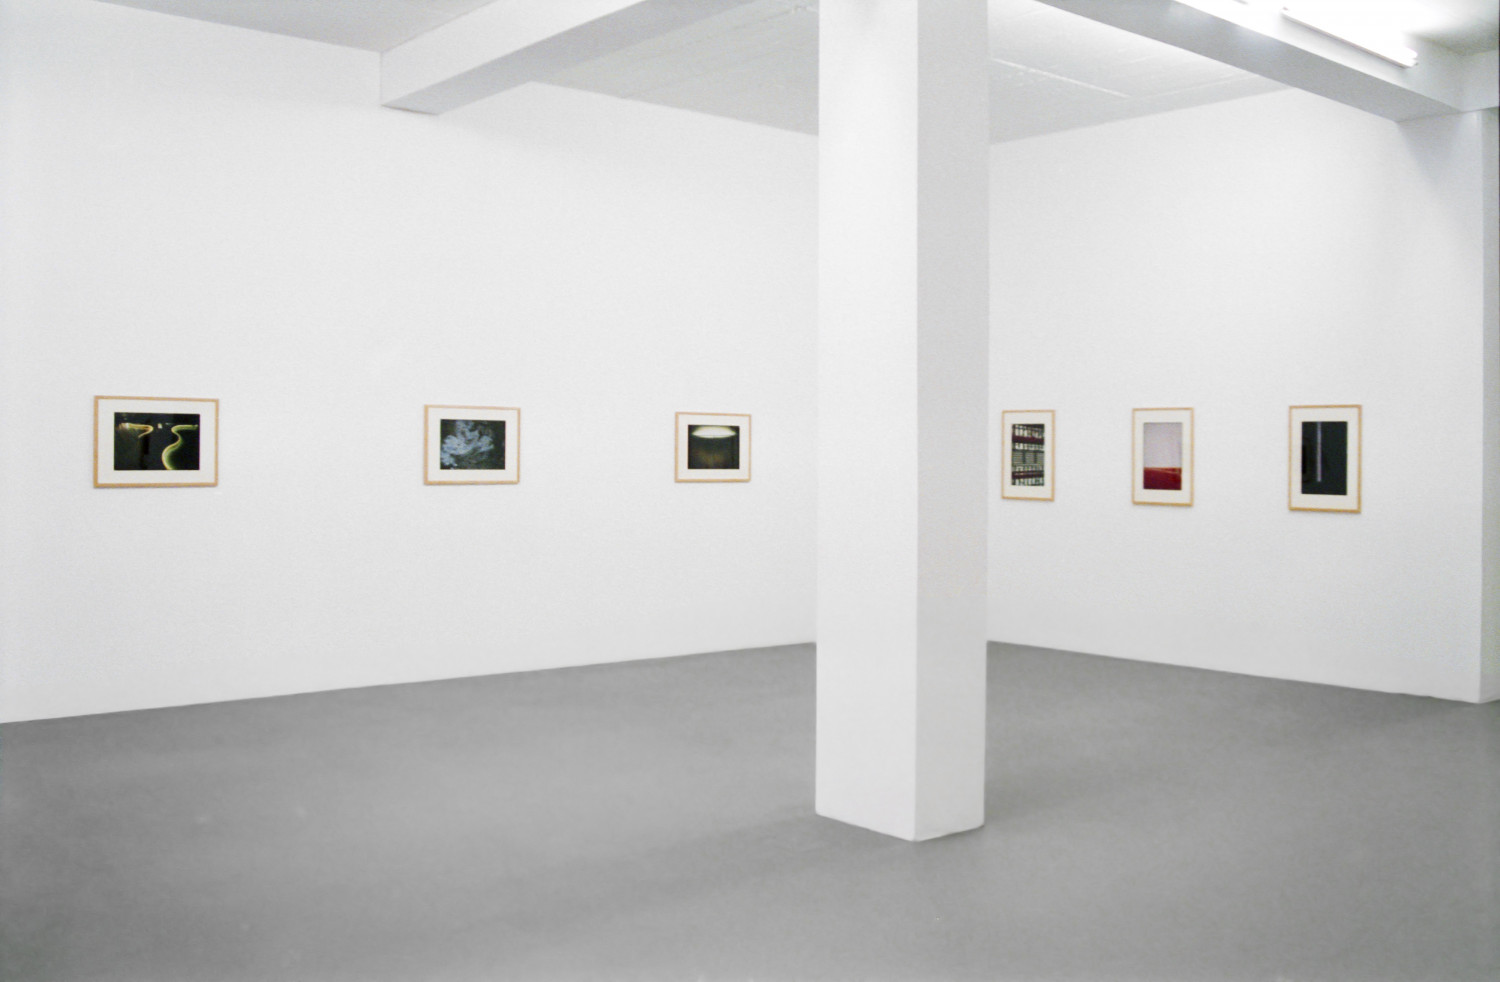 John Chamberlain, ‘Juan Uslé / John Chamberlain – Photographien’, Installation view, Buchmann Galerie Köln, 1996